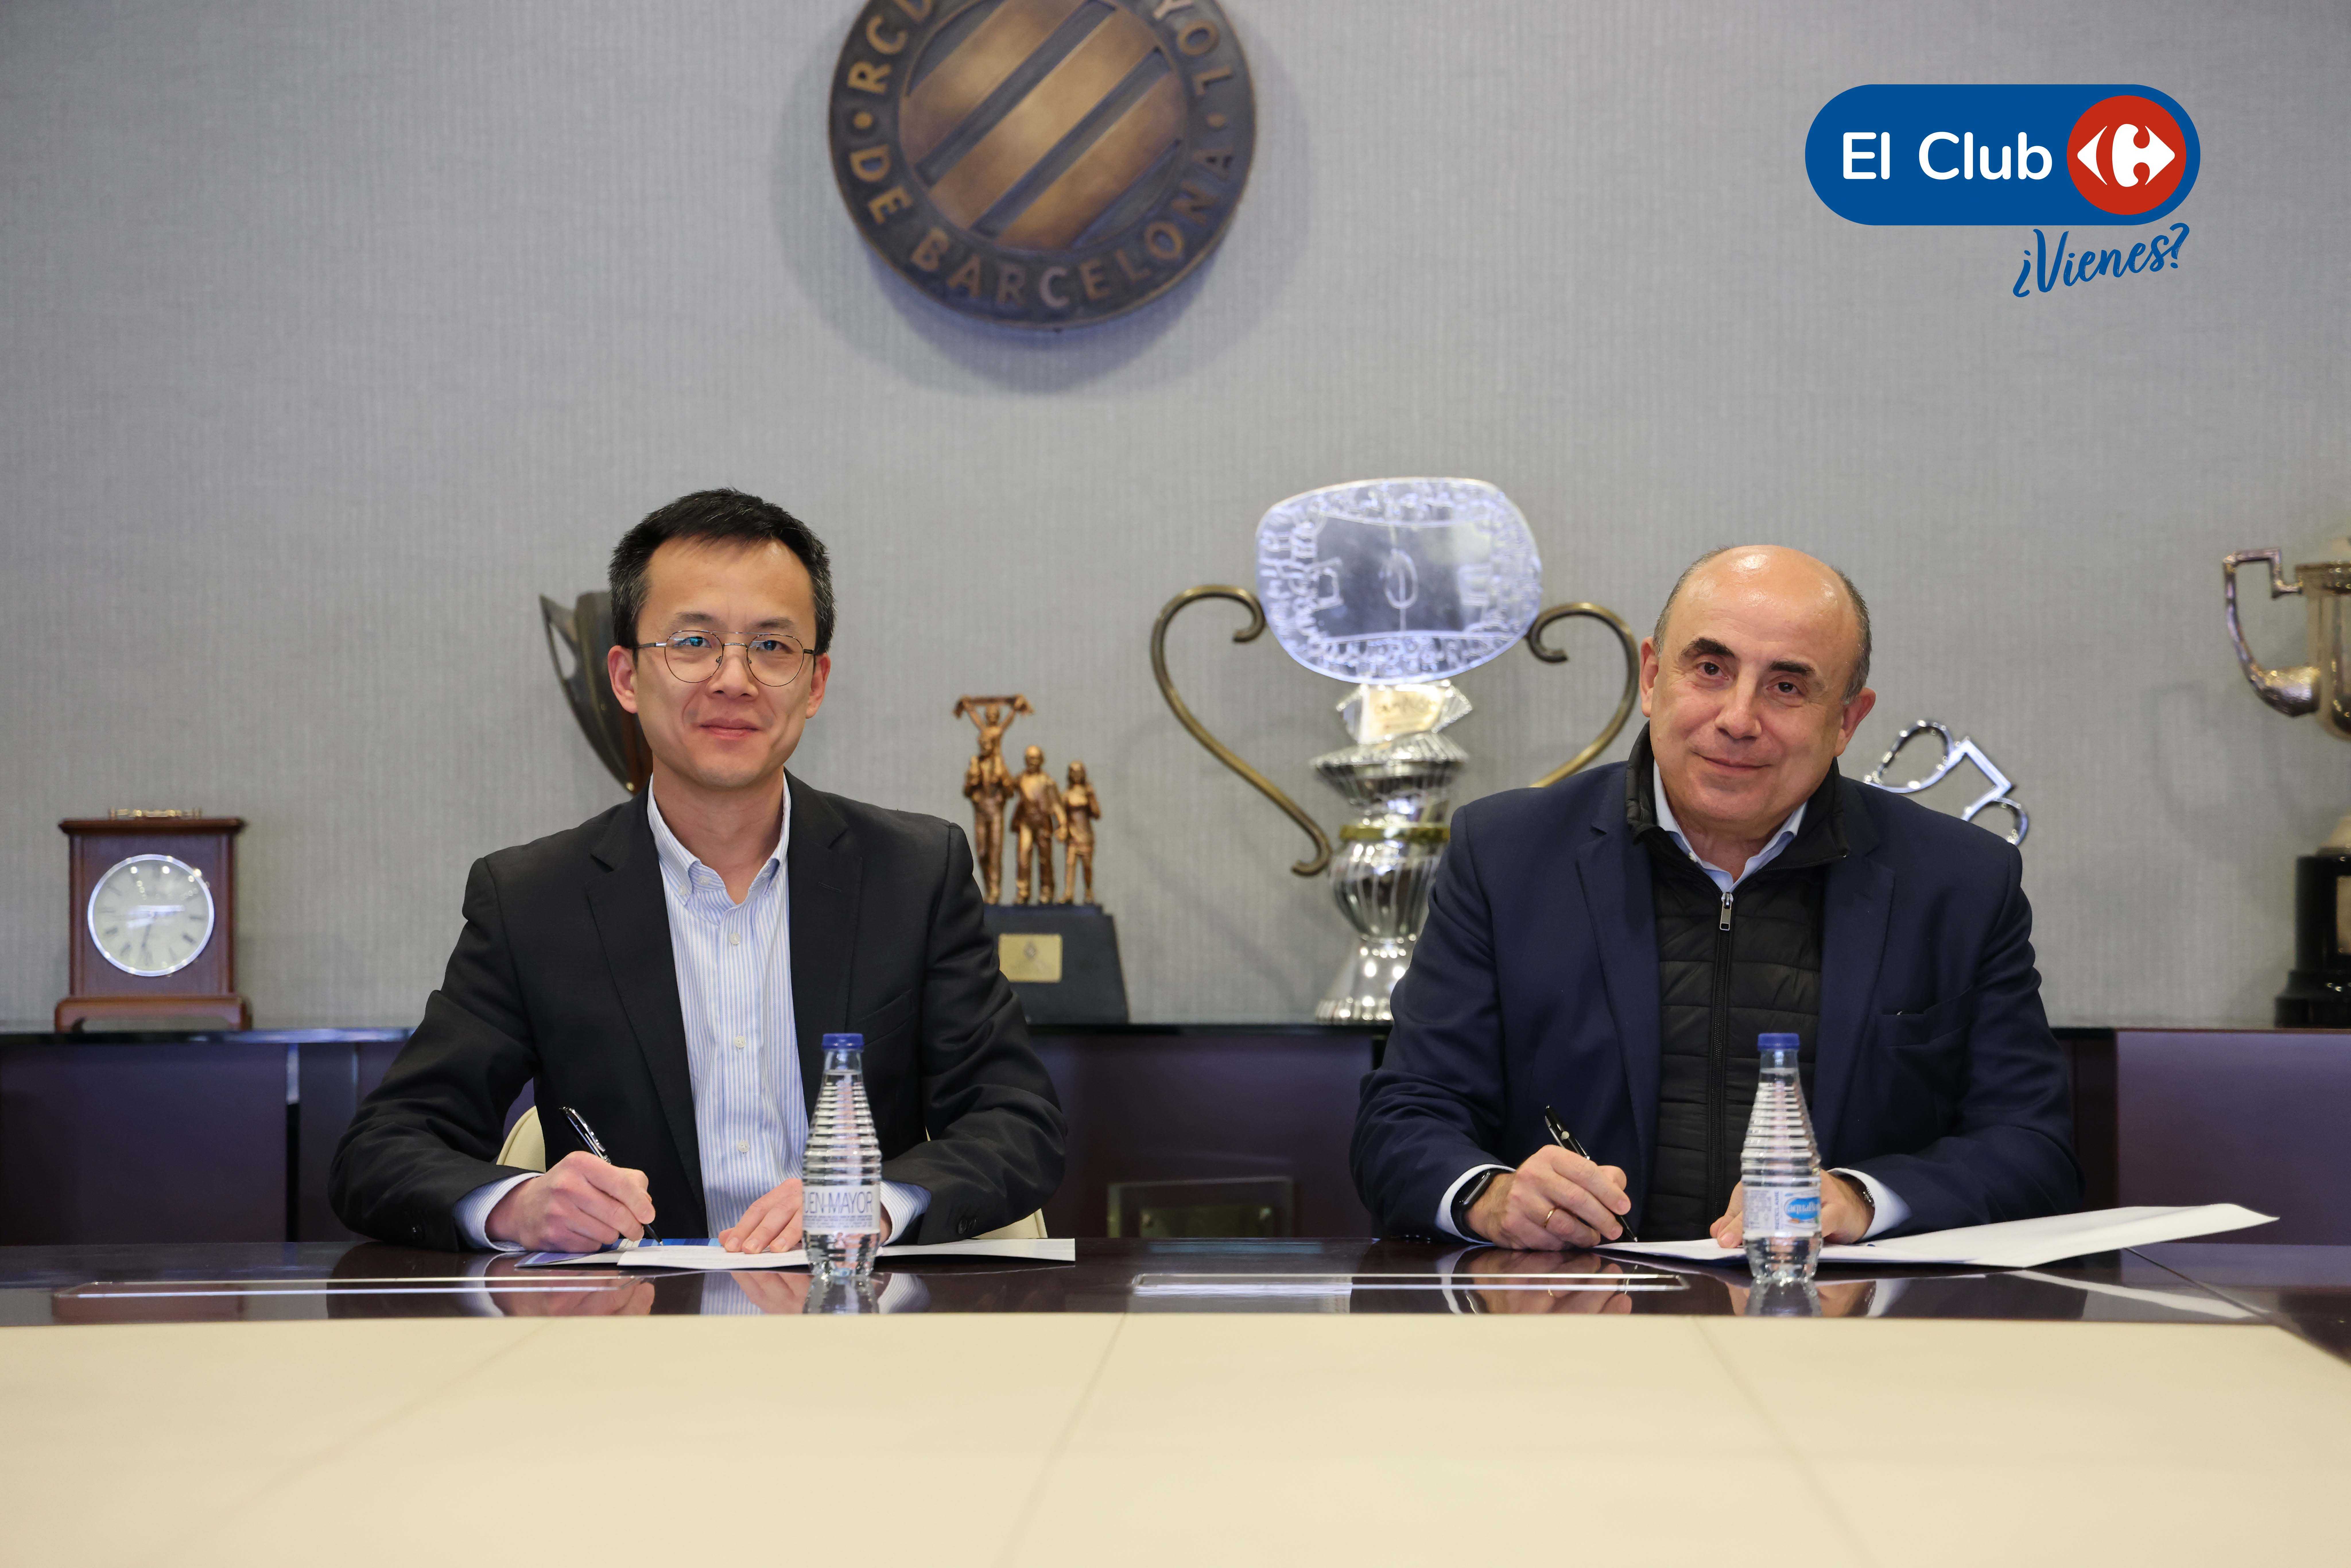 El Club Carrefour nuevo colaborador del RCD Espanyol